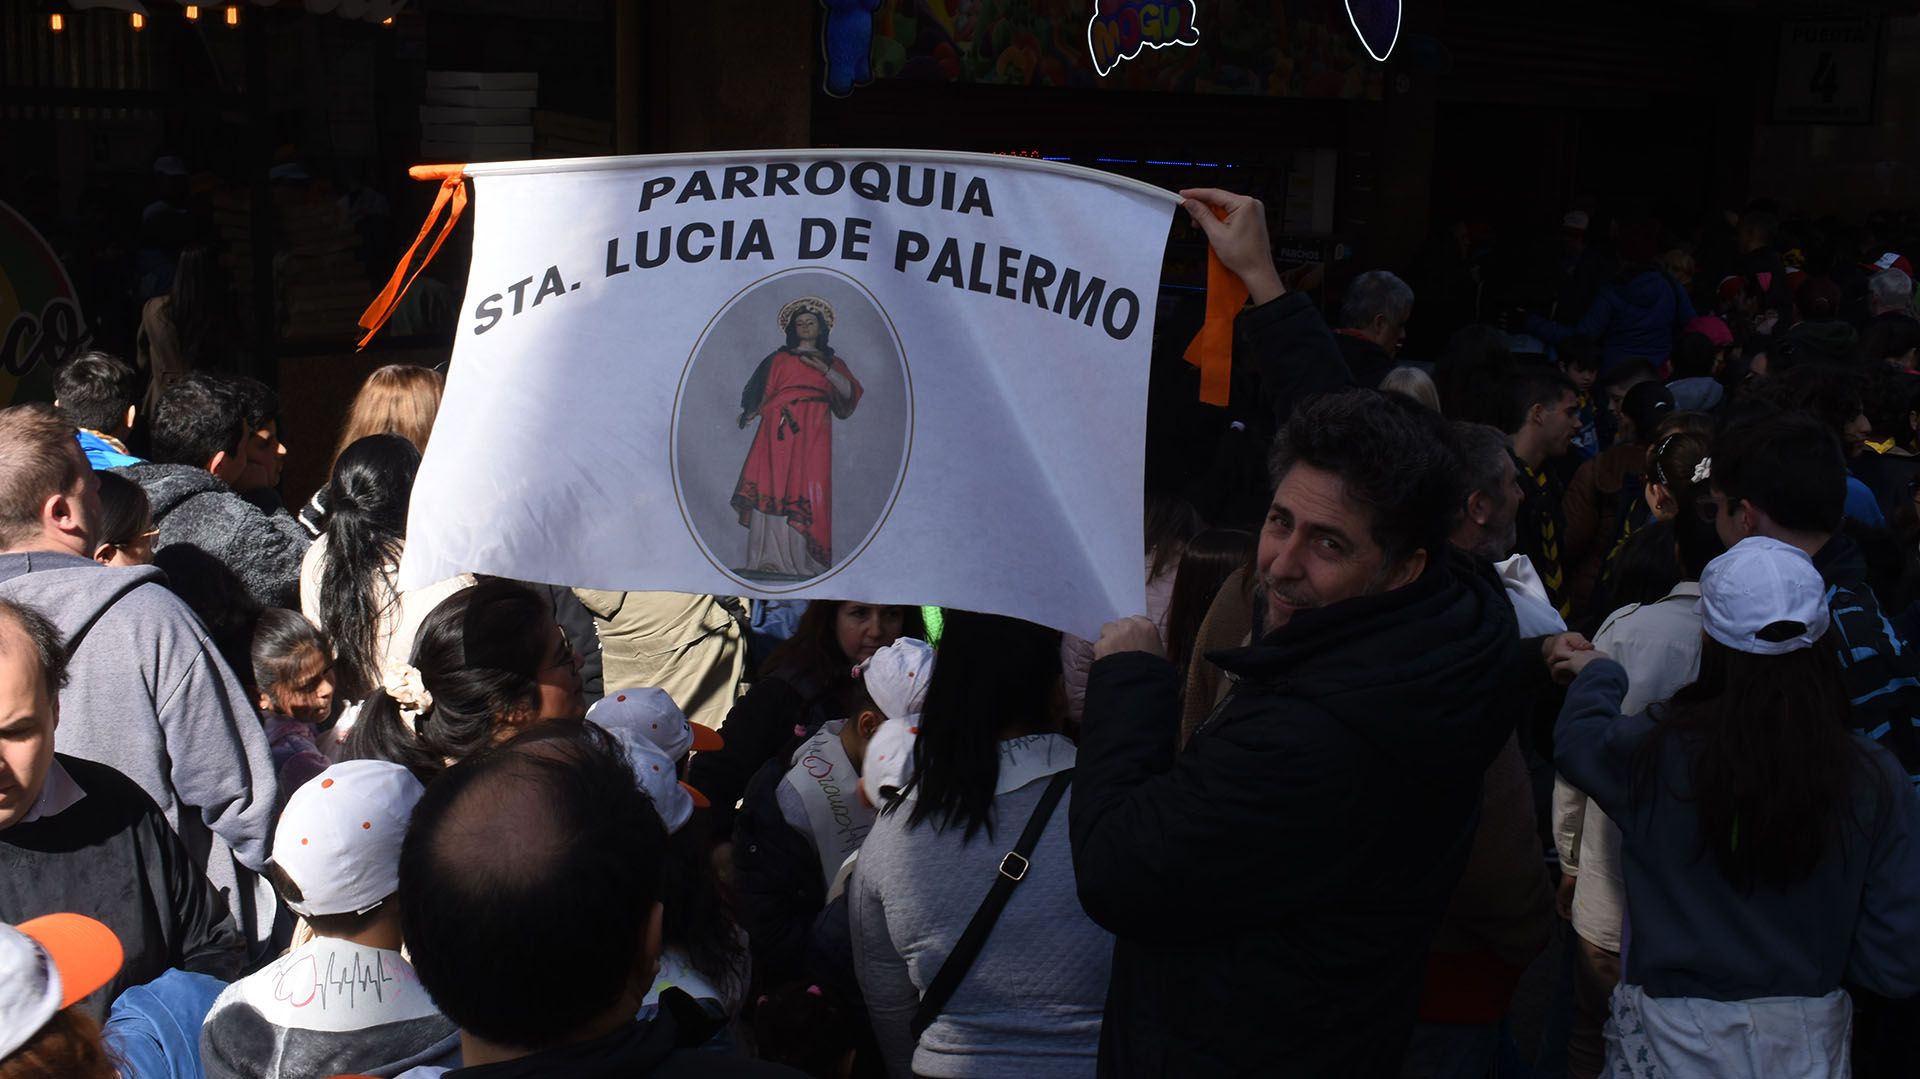 La Parroquia Santa Lucía de Palermo estuvo presente en la celebración